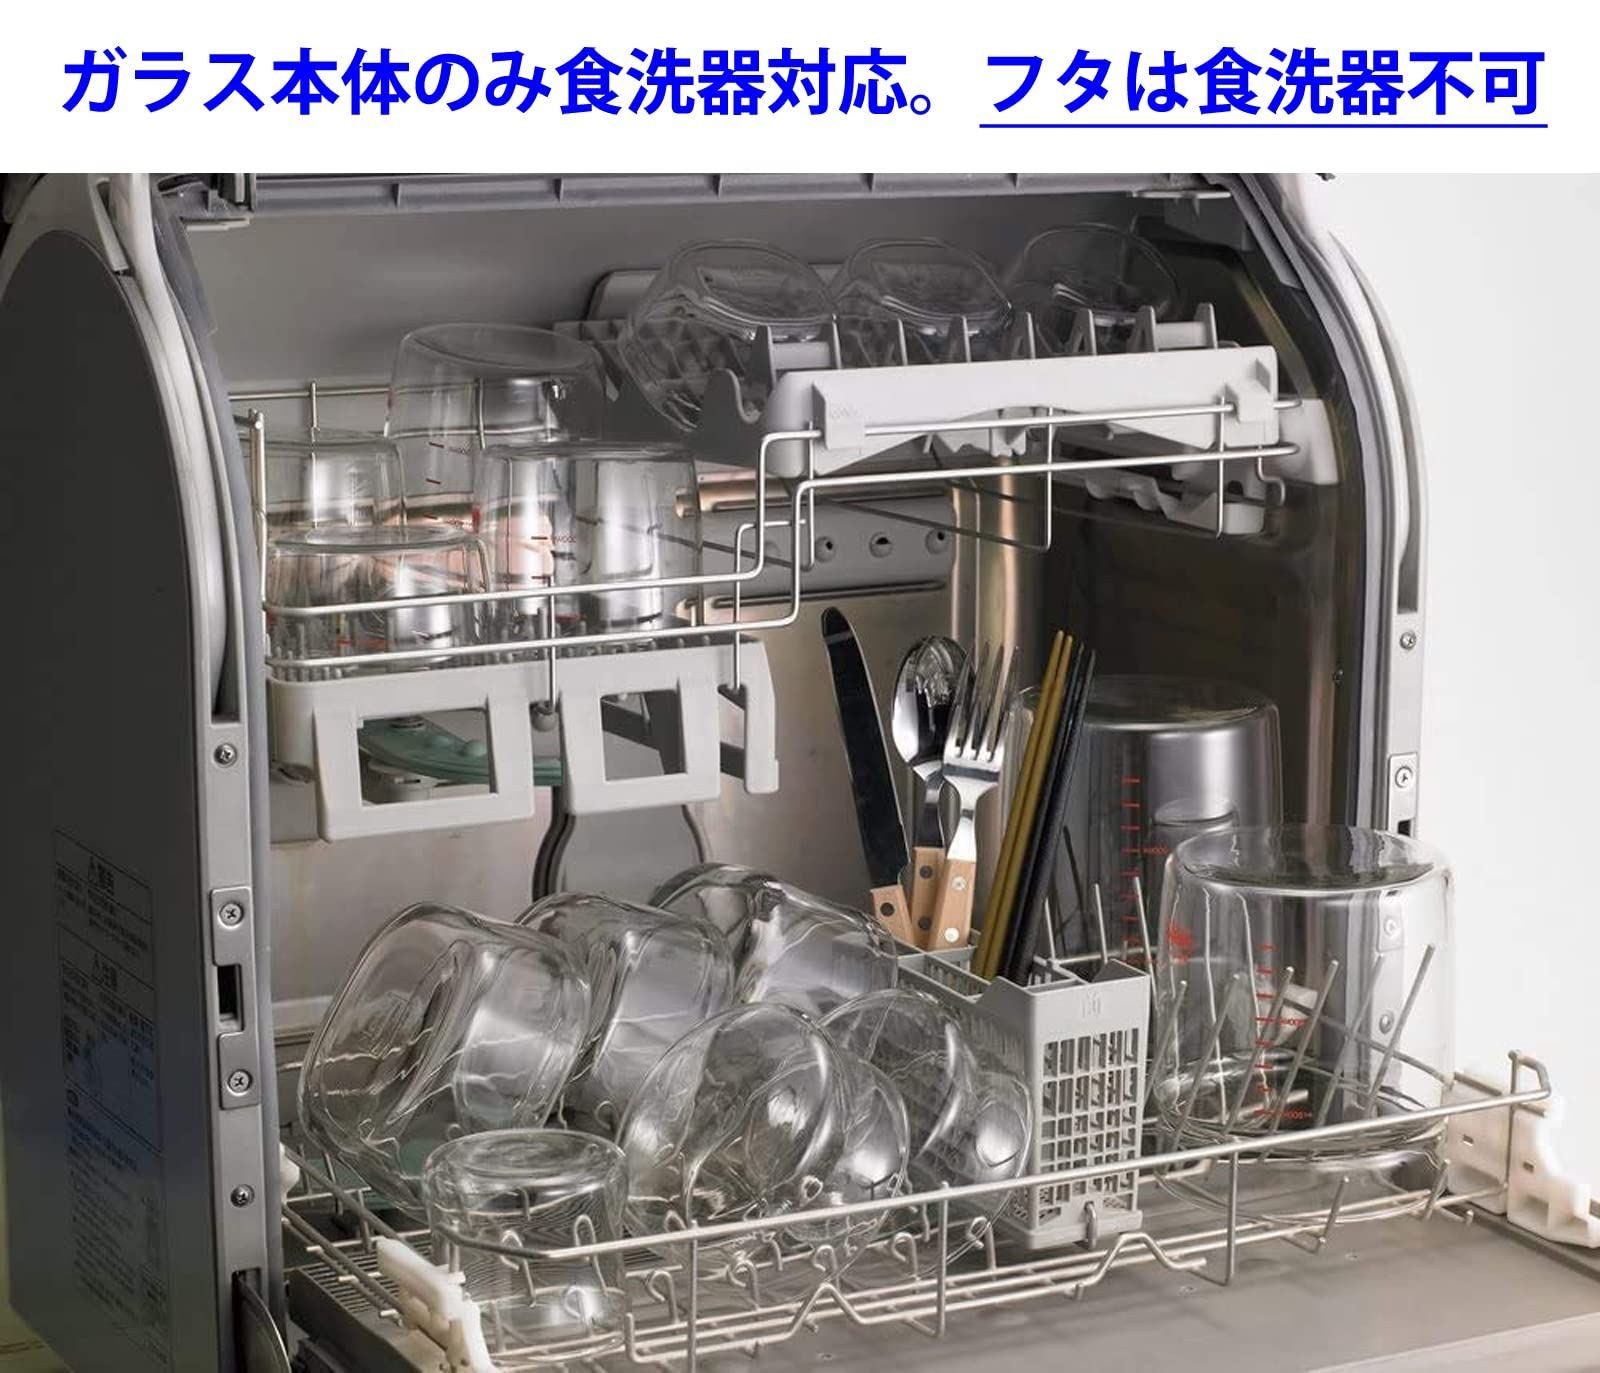 【数量限定】iwaki イワキ 耐熱ガラス 保存容器 グリーン 角型 M 800ml パック&レンジ KC3247N-G